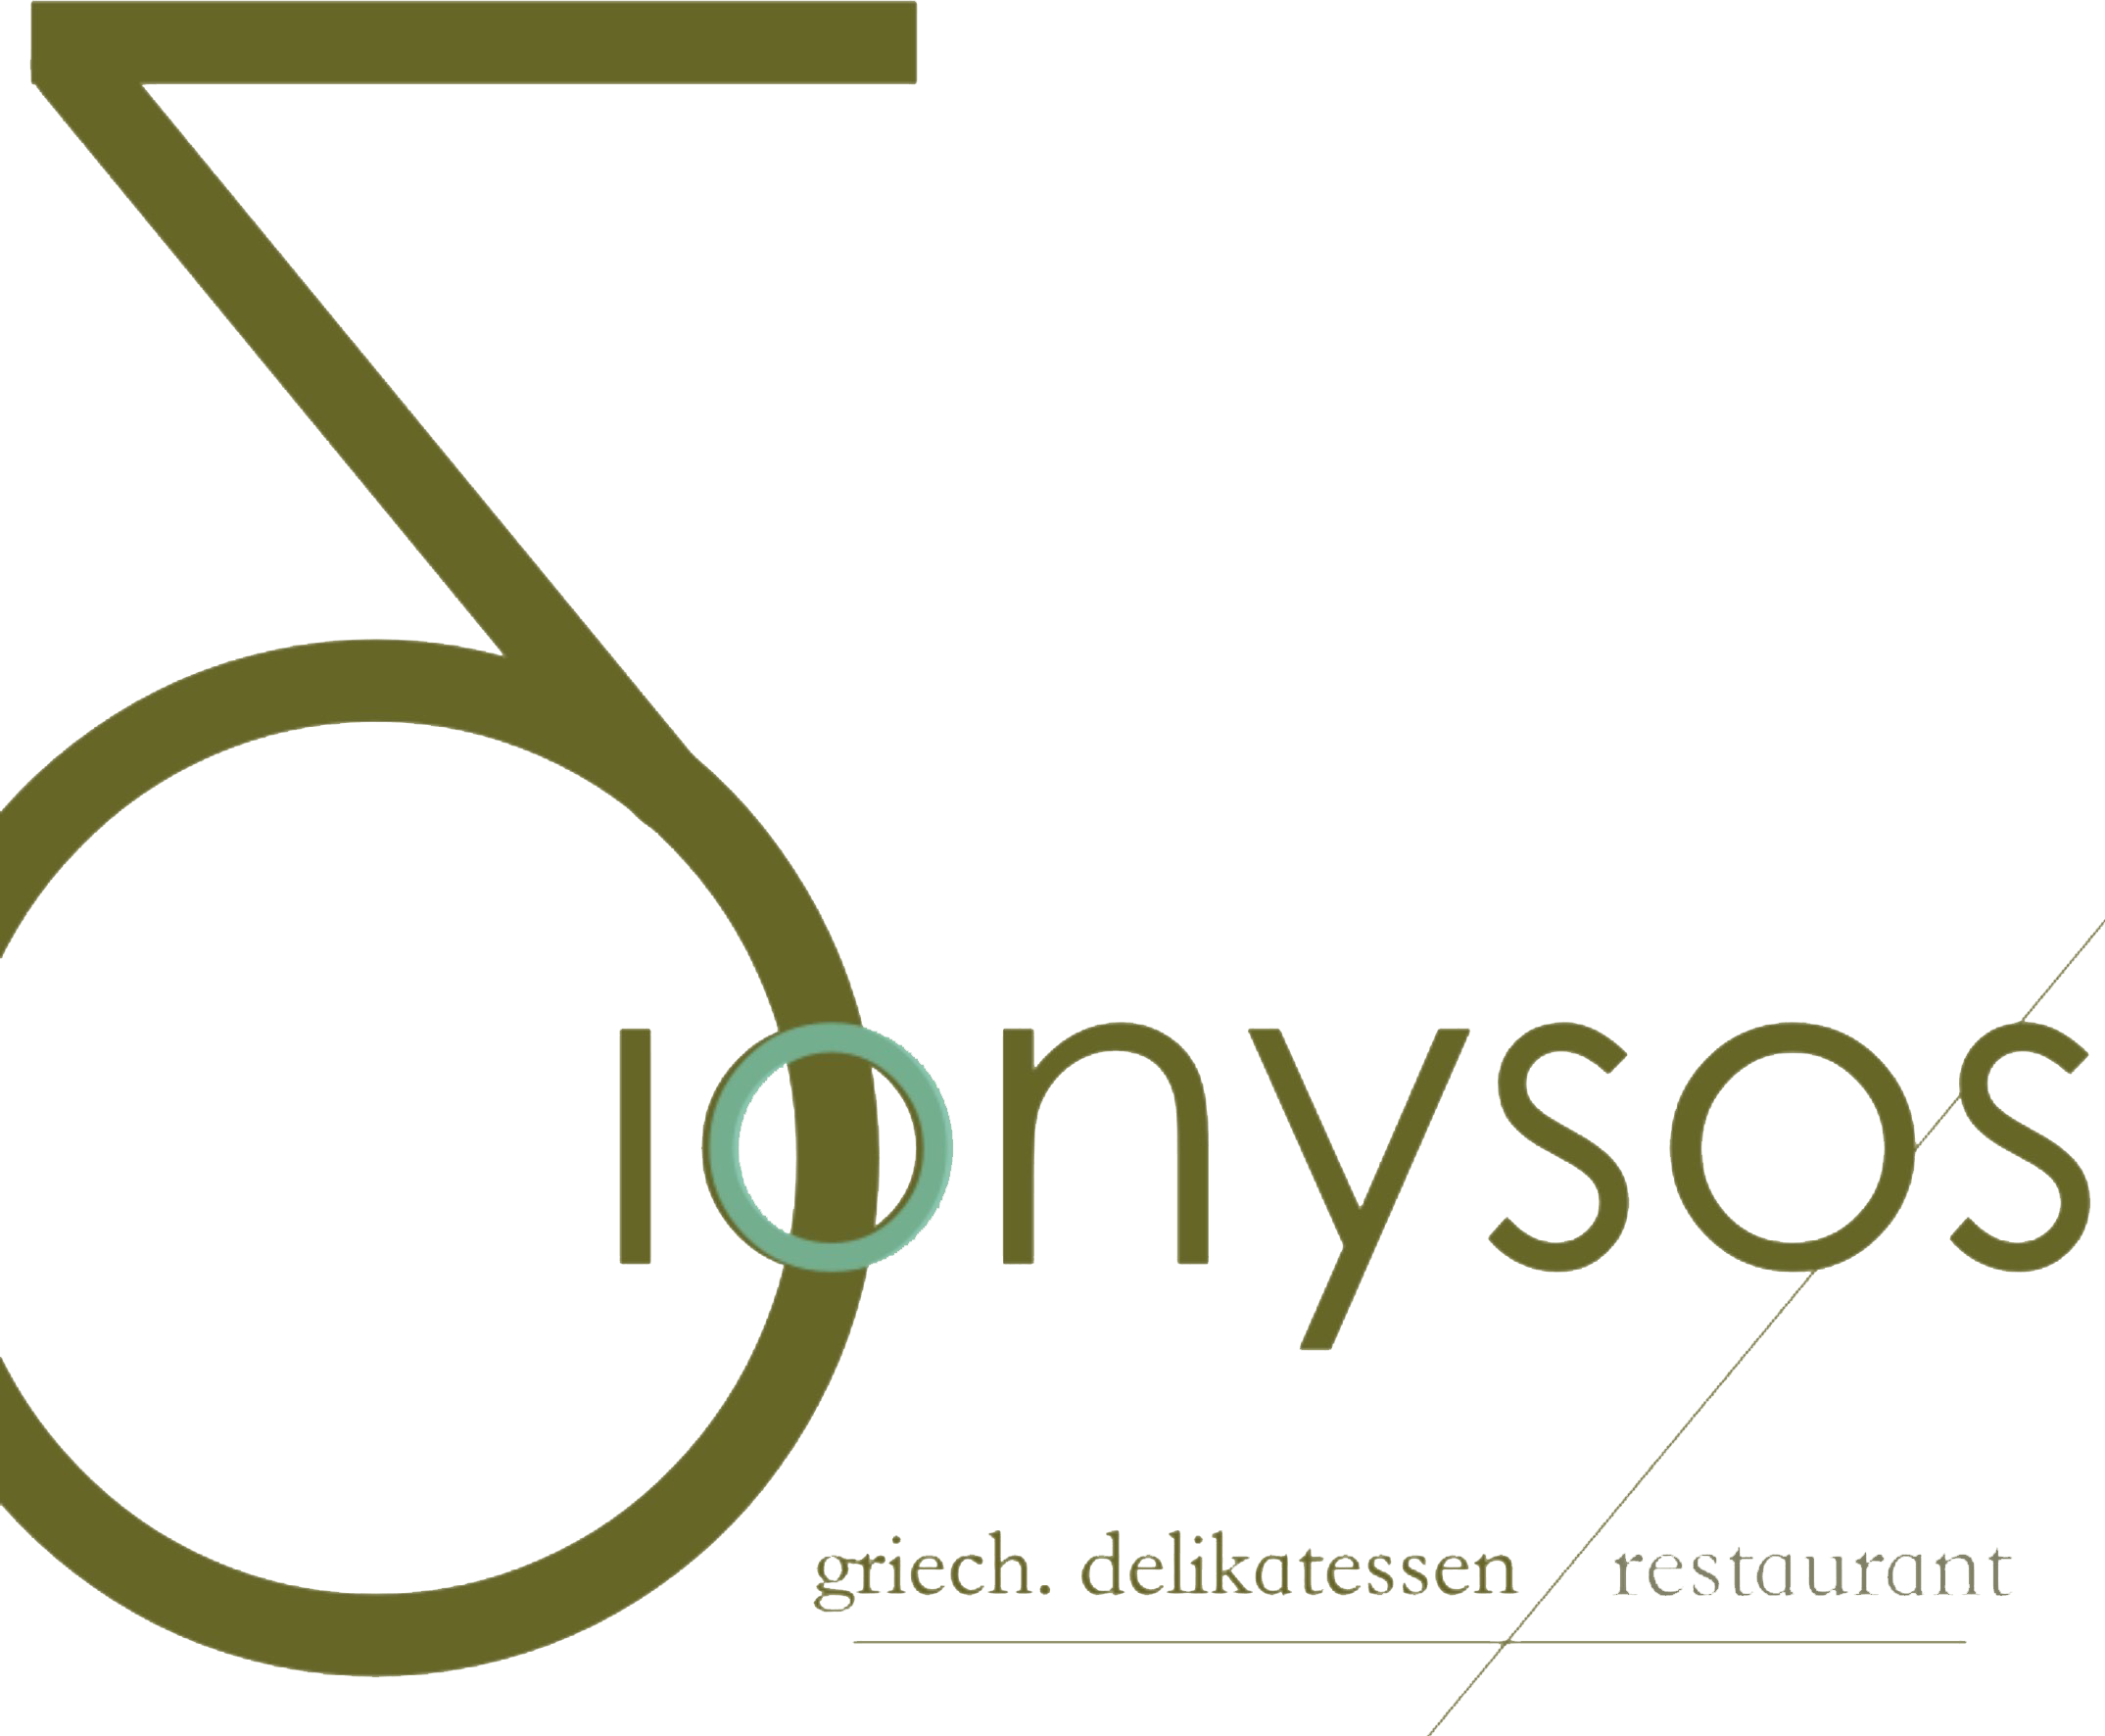 Restaurant Dionysos Logo